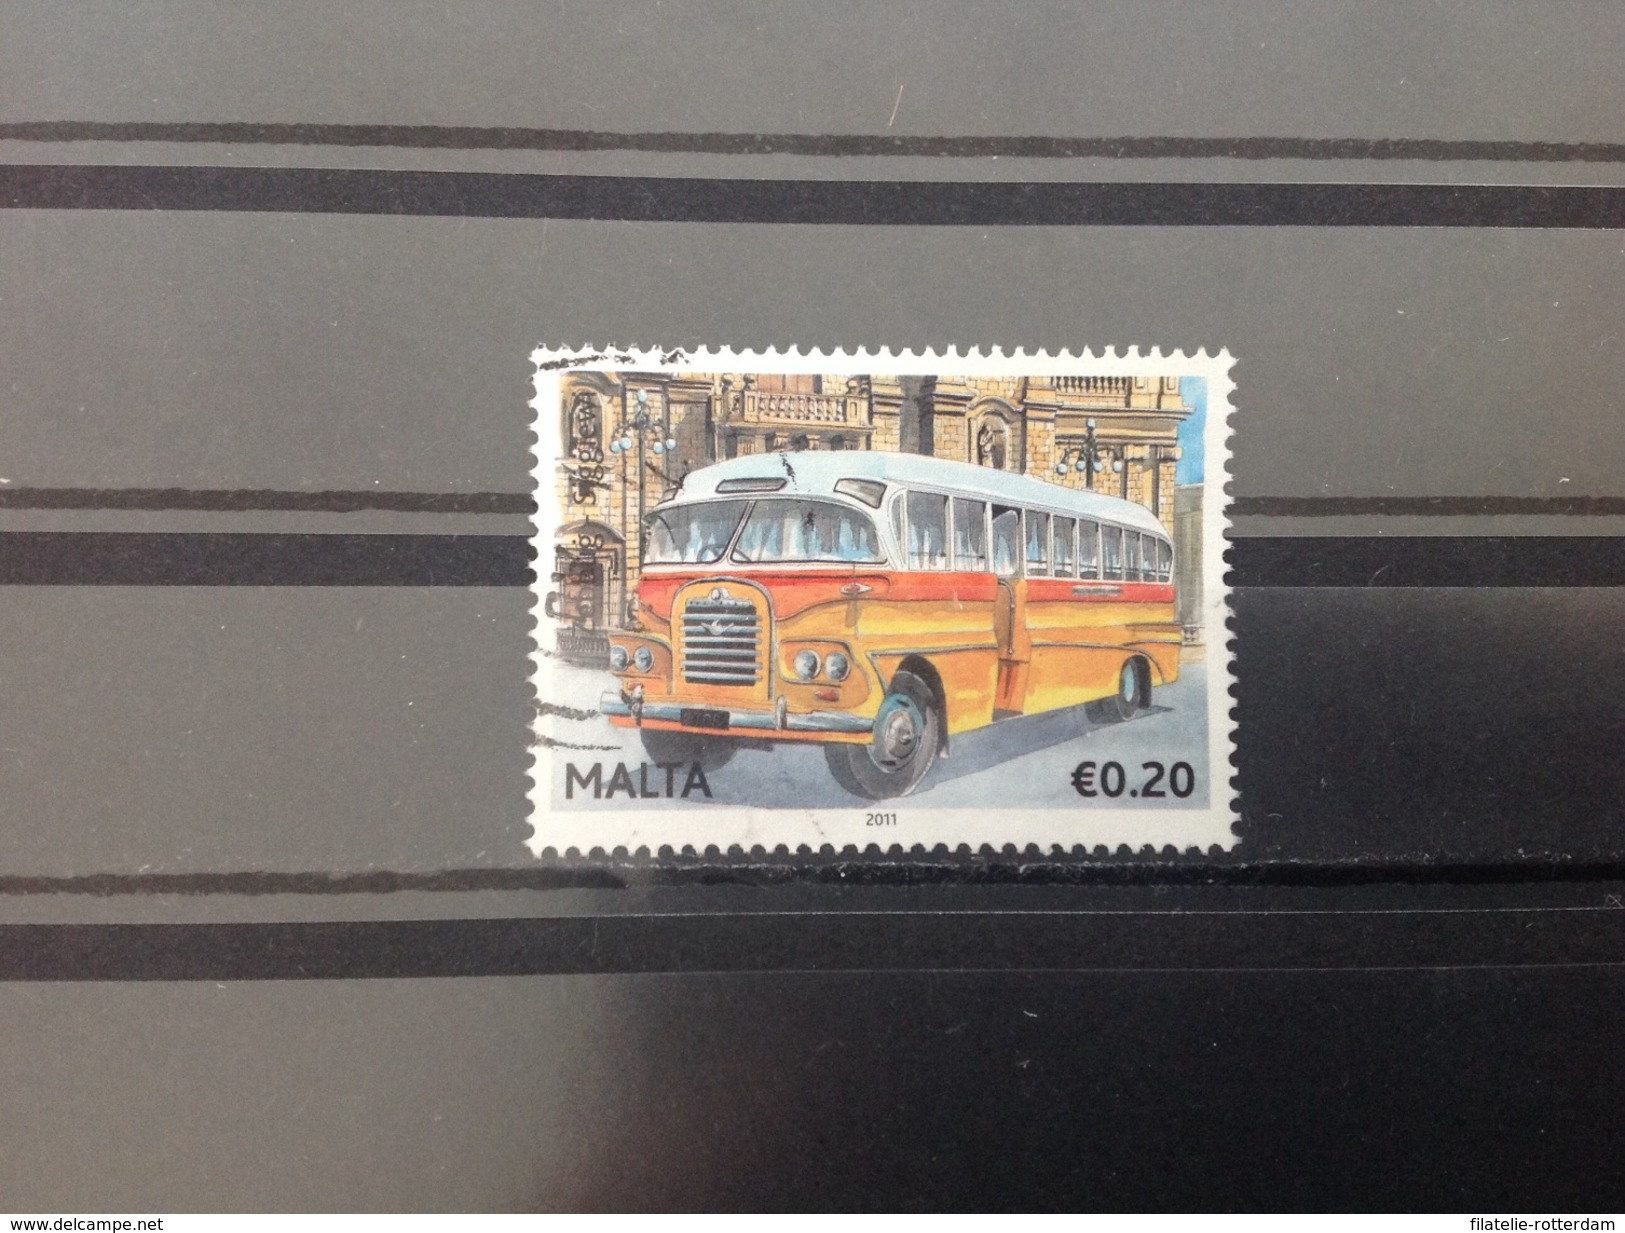 Malta / Malte - Bussen (0.20) 2011 - Malta